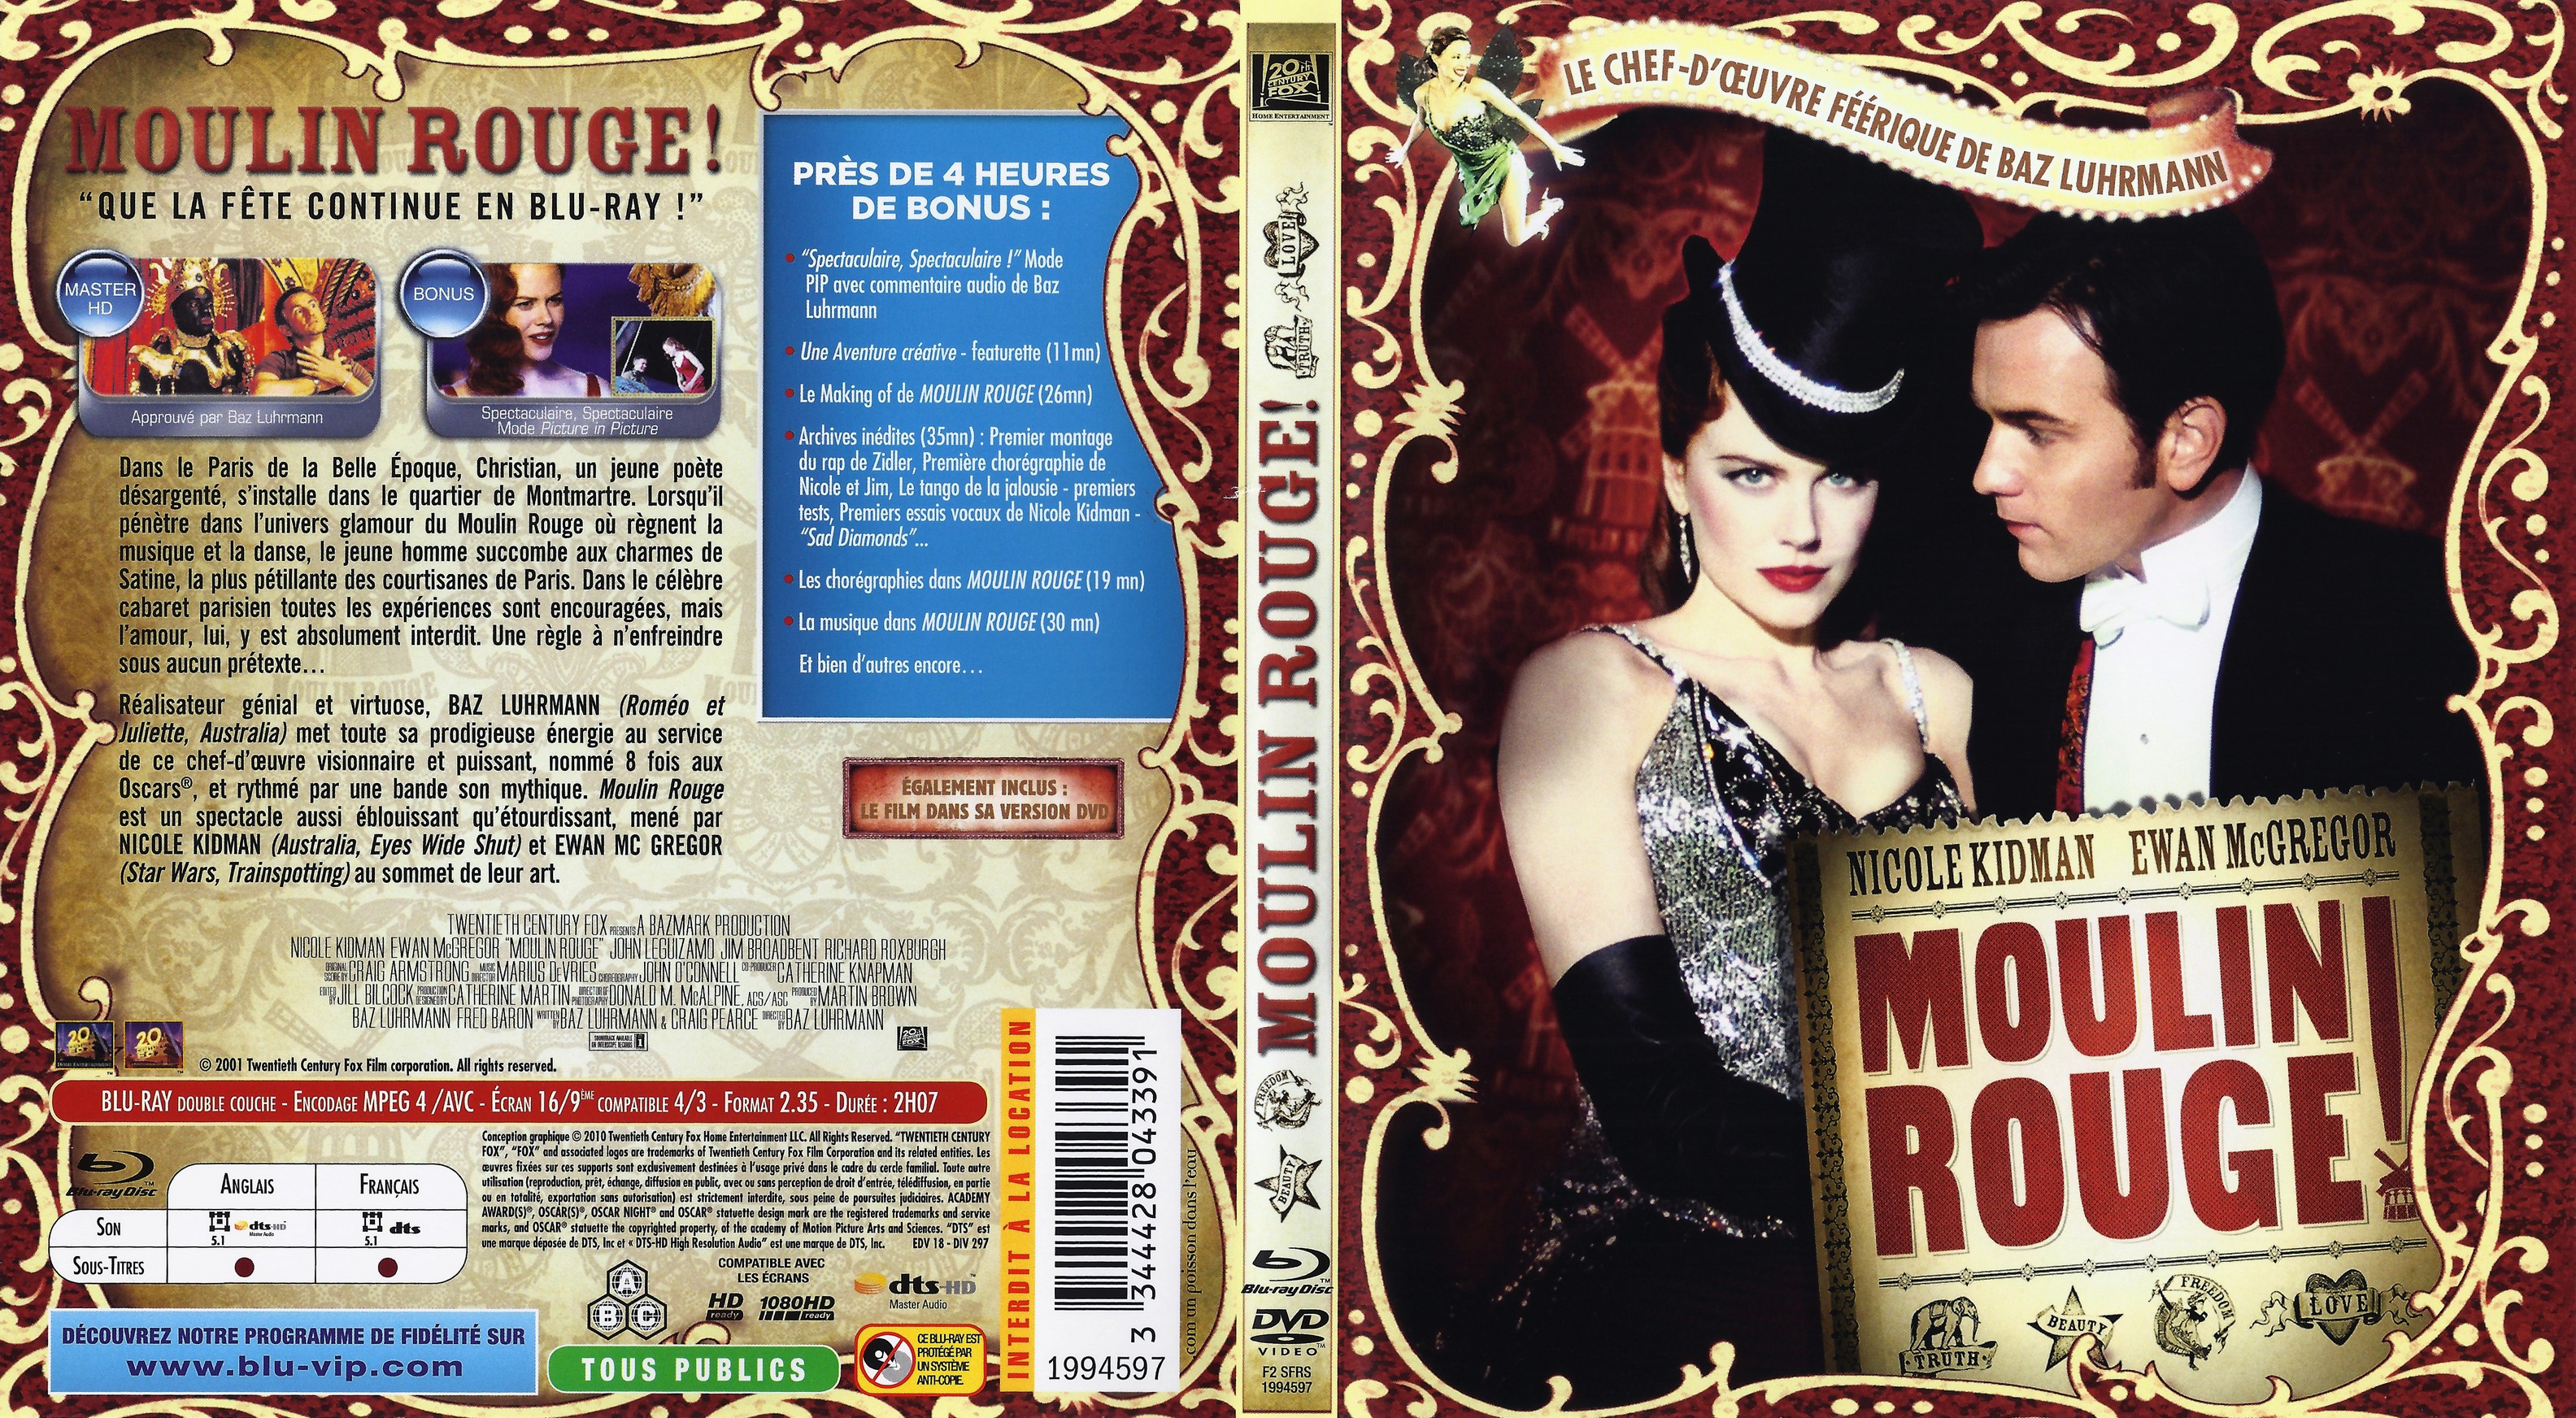 Jaquette DVD de Le nom de la rose (BLU-RAY) - Cinéma Passion